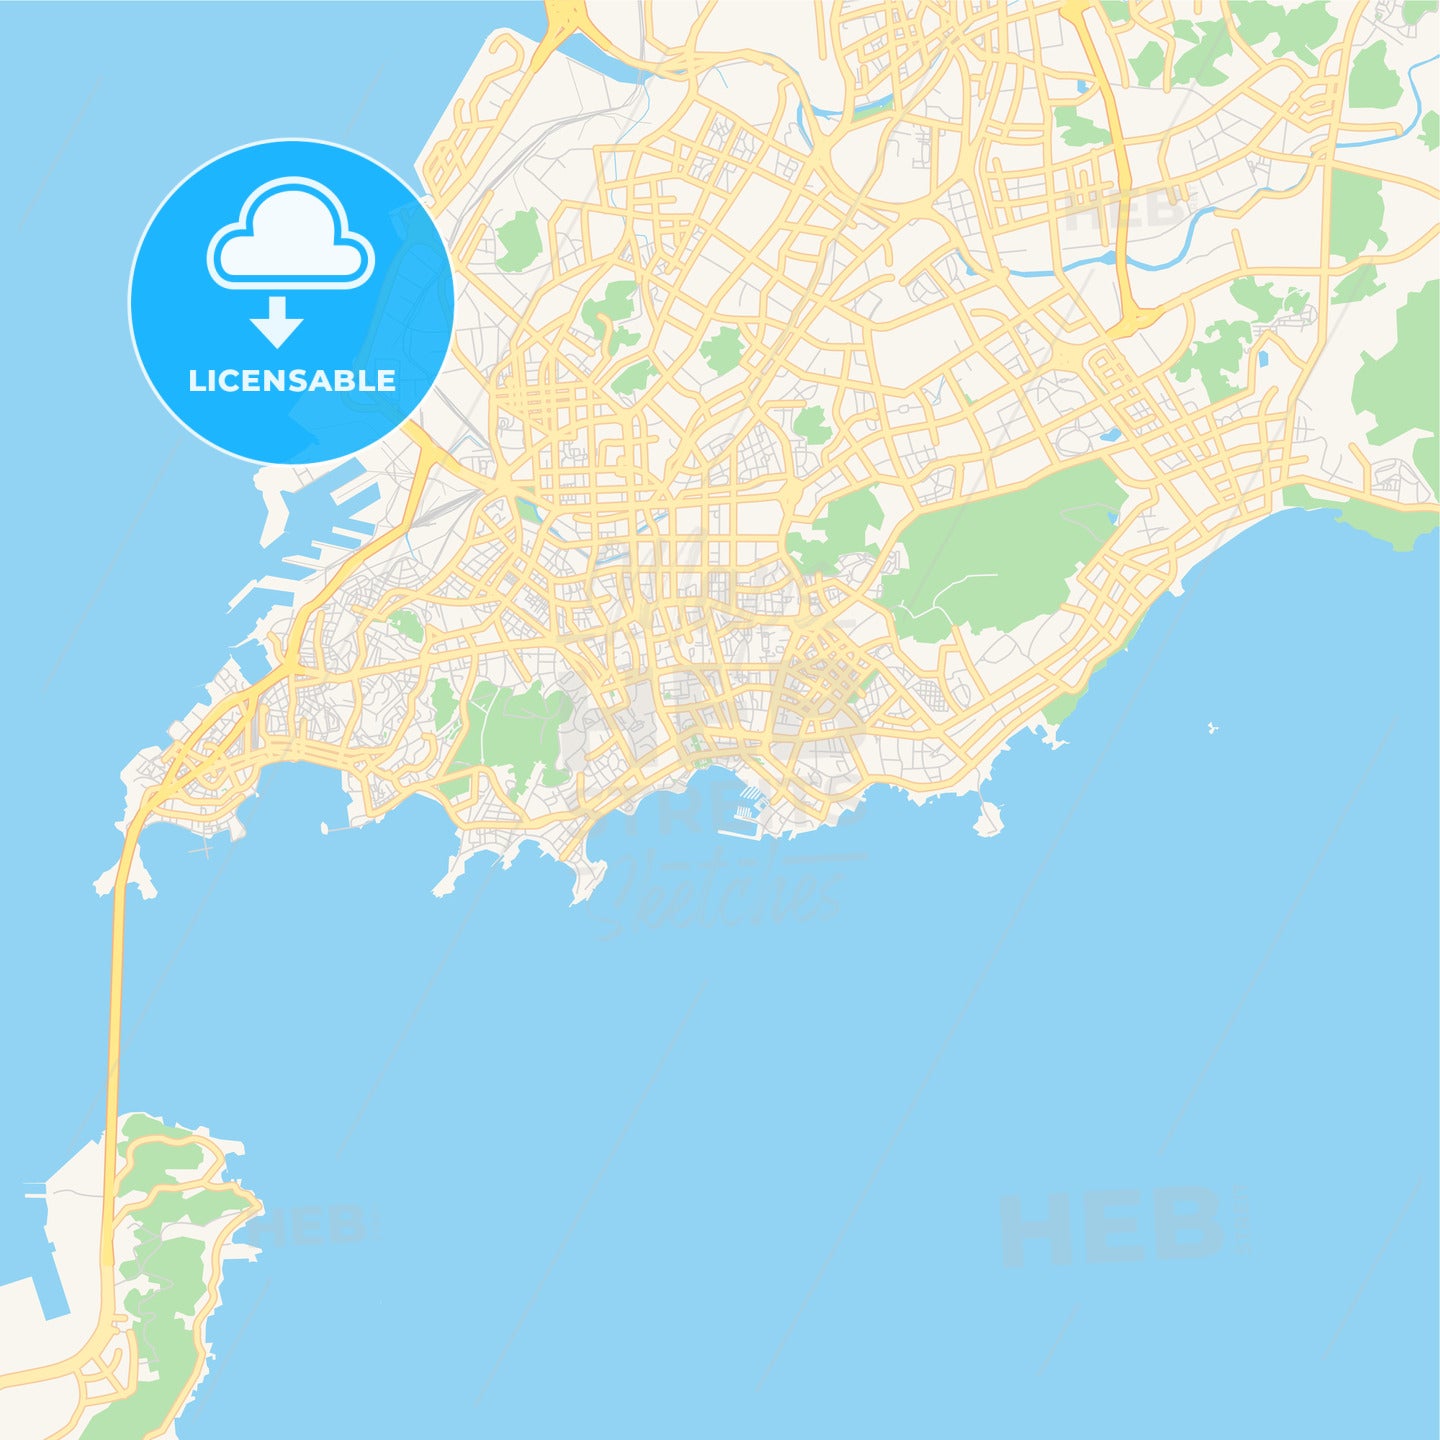 Printable street map of Qingdao, China